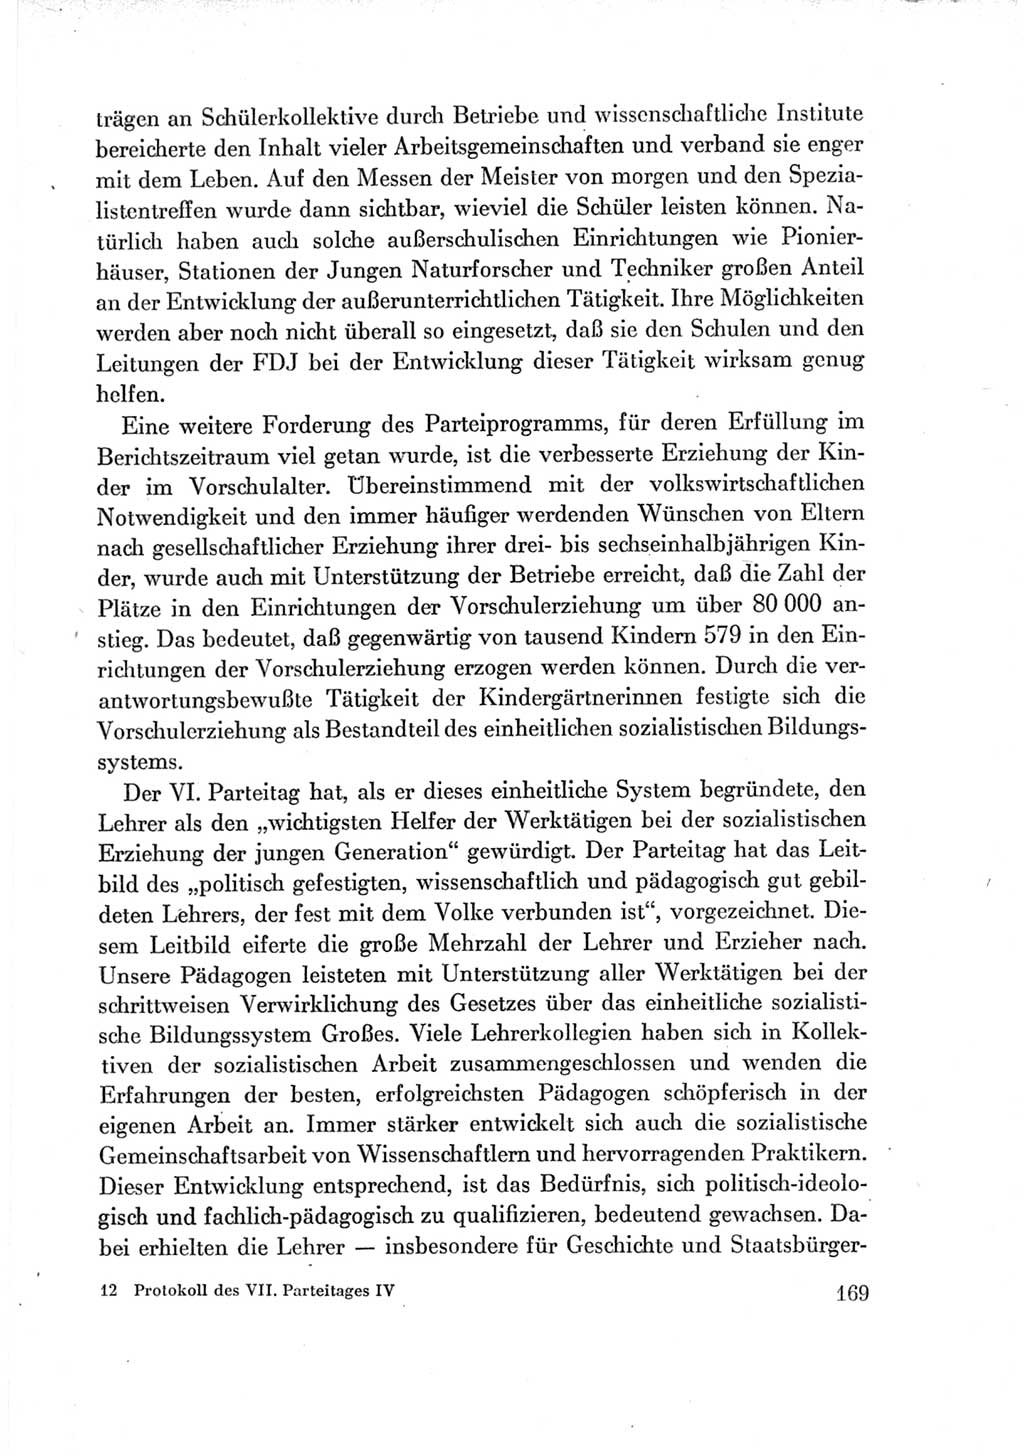 Protokoll der Verhandlungen des Ⅶ. Parteitages der Sozialistischen Einheitspartei Deutschlands (SED) [Deutsche Demokratische Republik (DDR)] 1967, Band Ⅳ, Seite 169 (Prot. Verh. Ⅶ. PT SED DDR 1967, Bd. Ⅳ, S. 169)